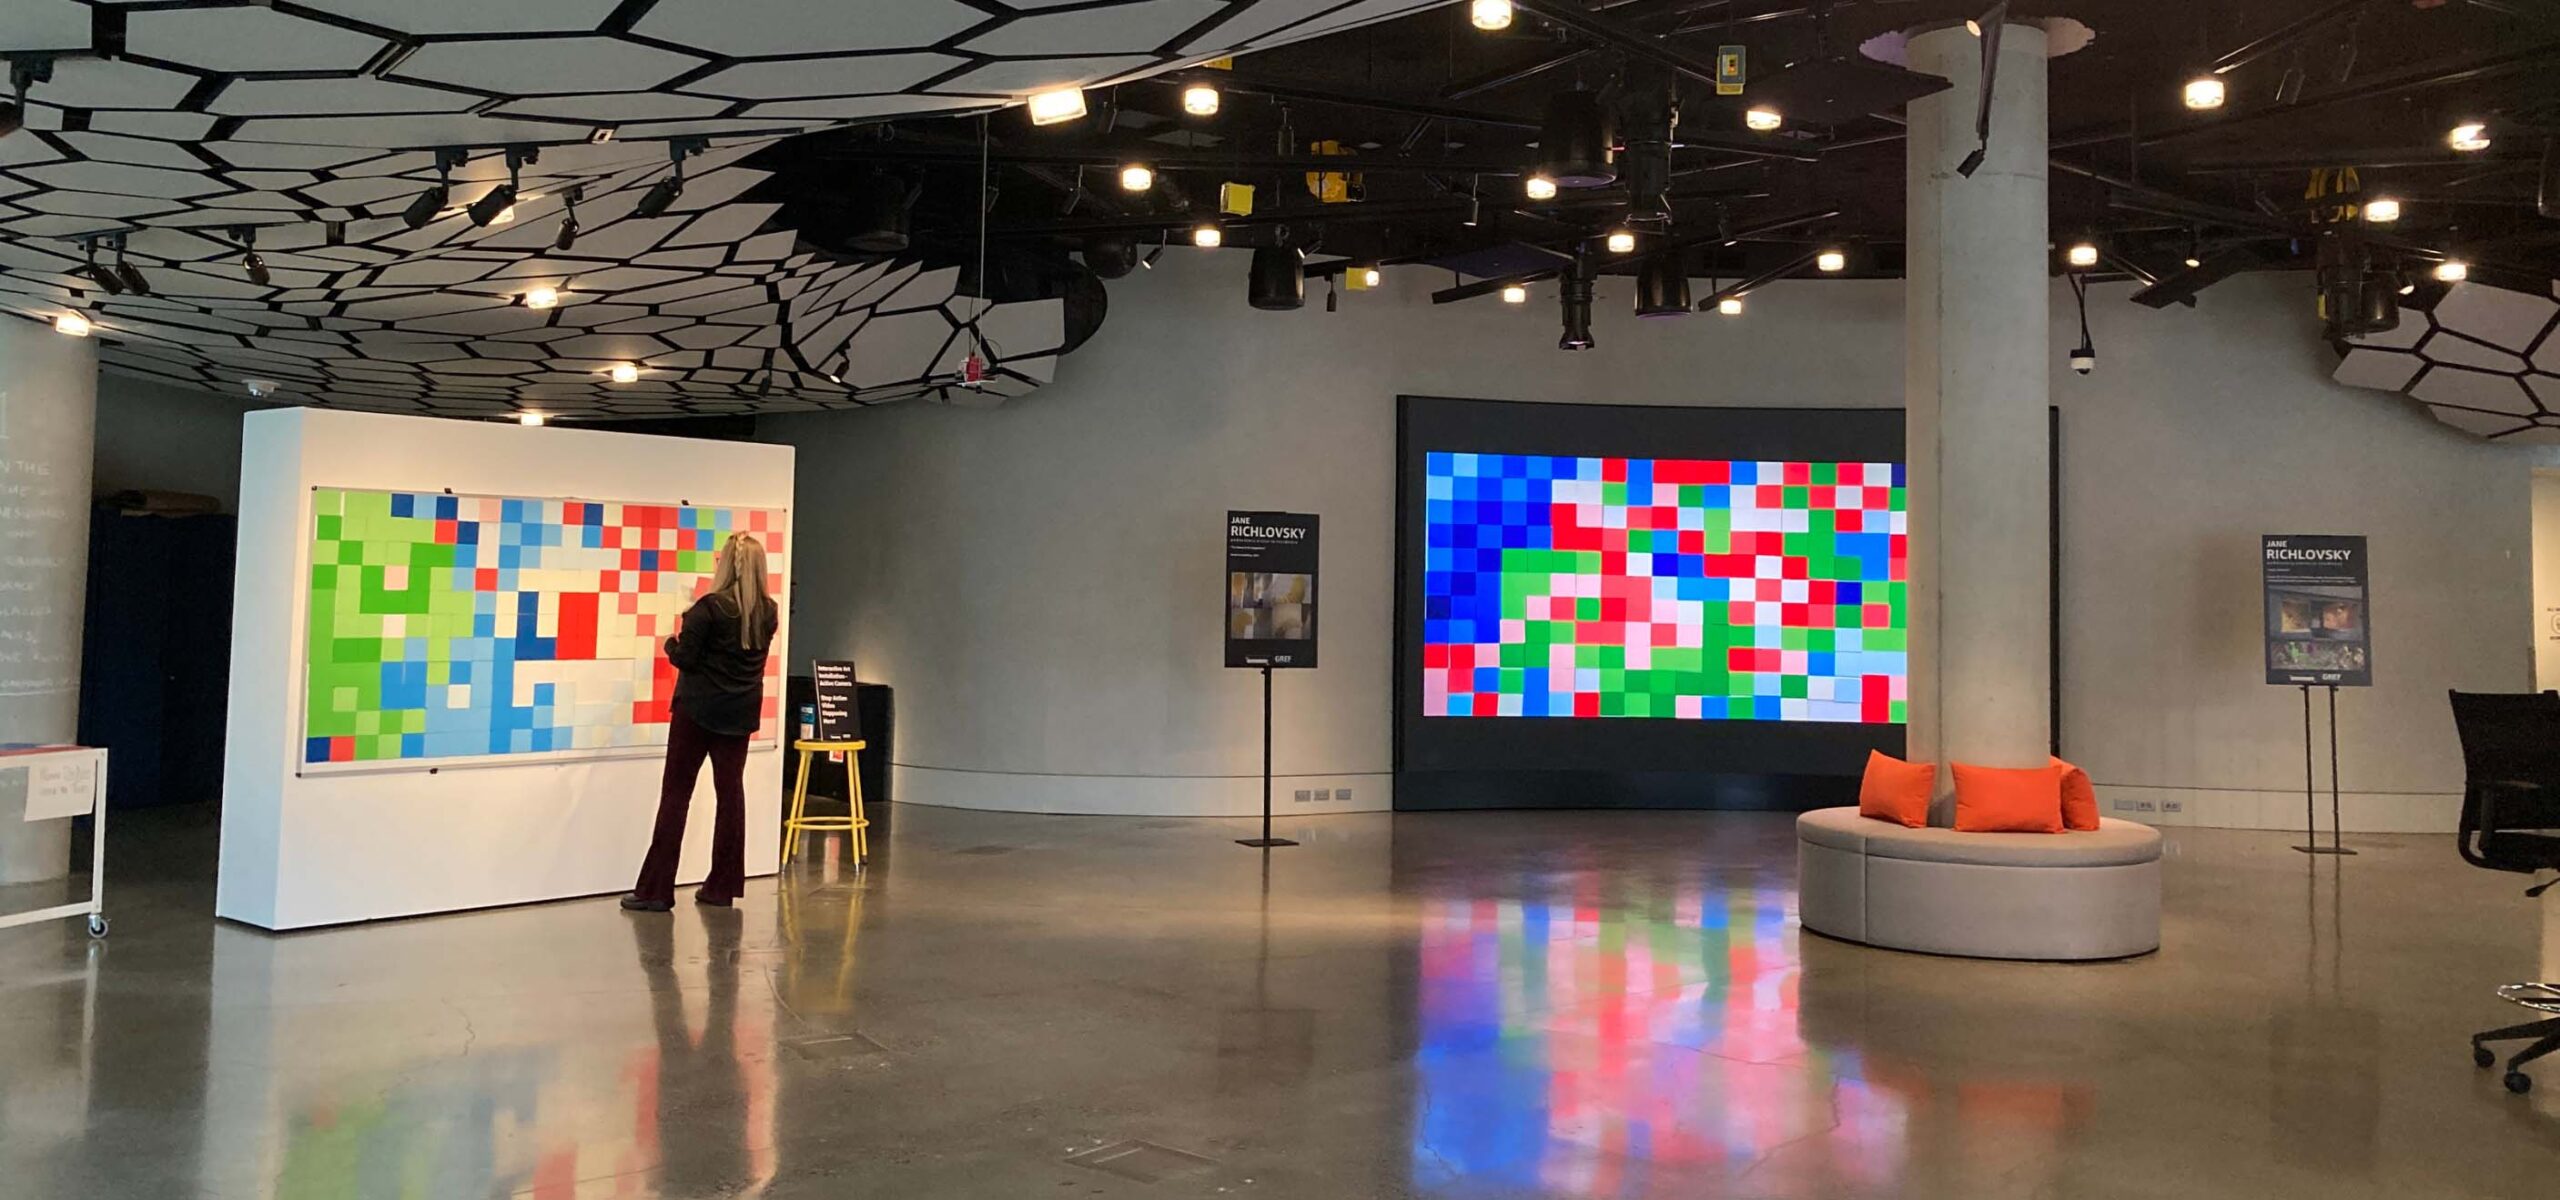 A giant mega pixels art display.